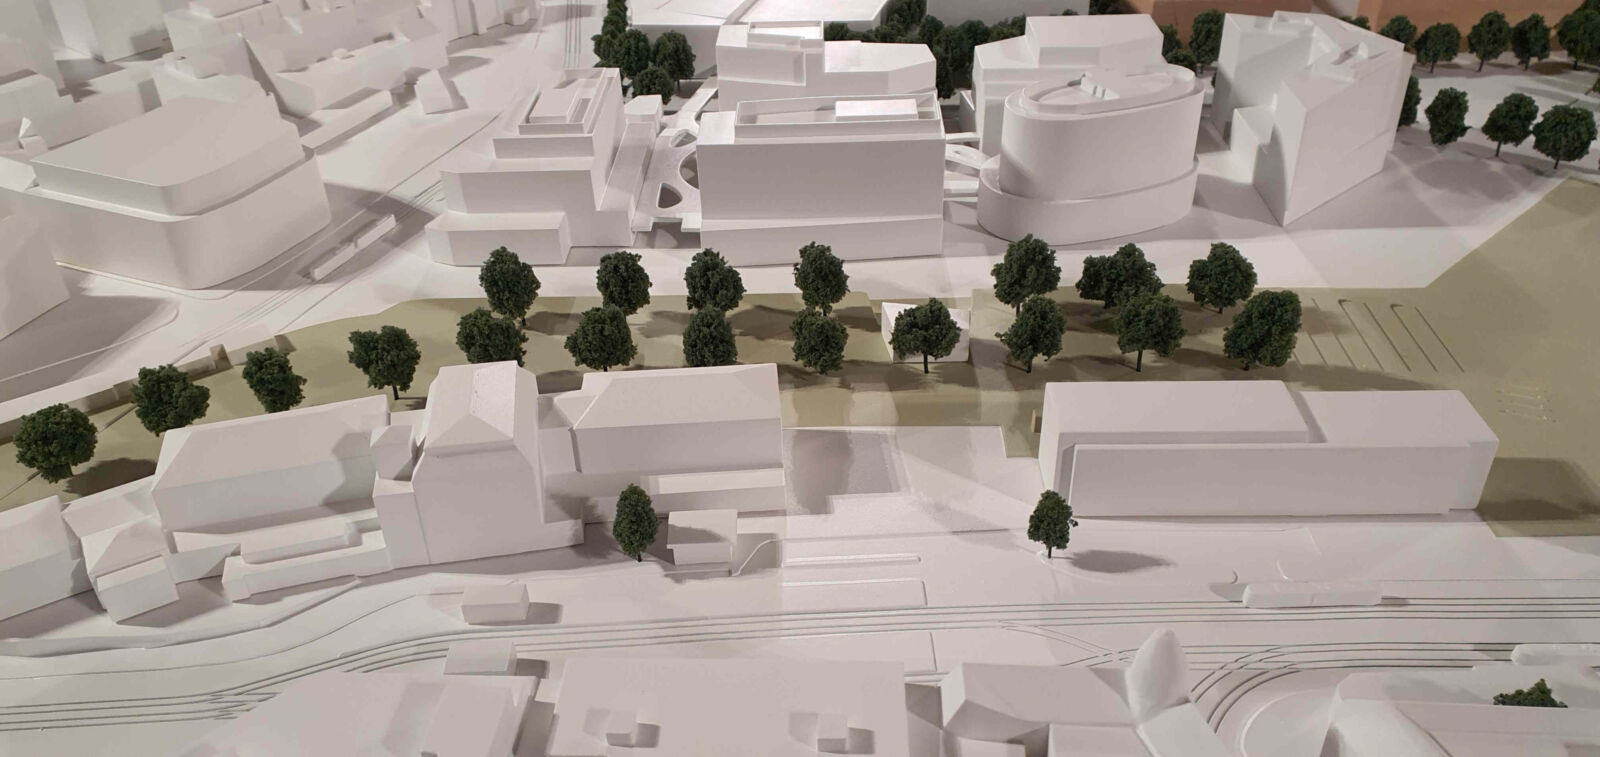 Vizualizace a model nového brněnského nádraží na výstavě v Křížové chodbě Nové radnice, říjen 2021